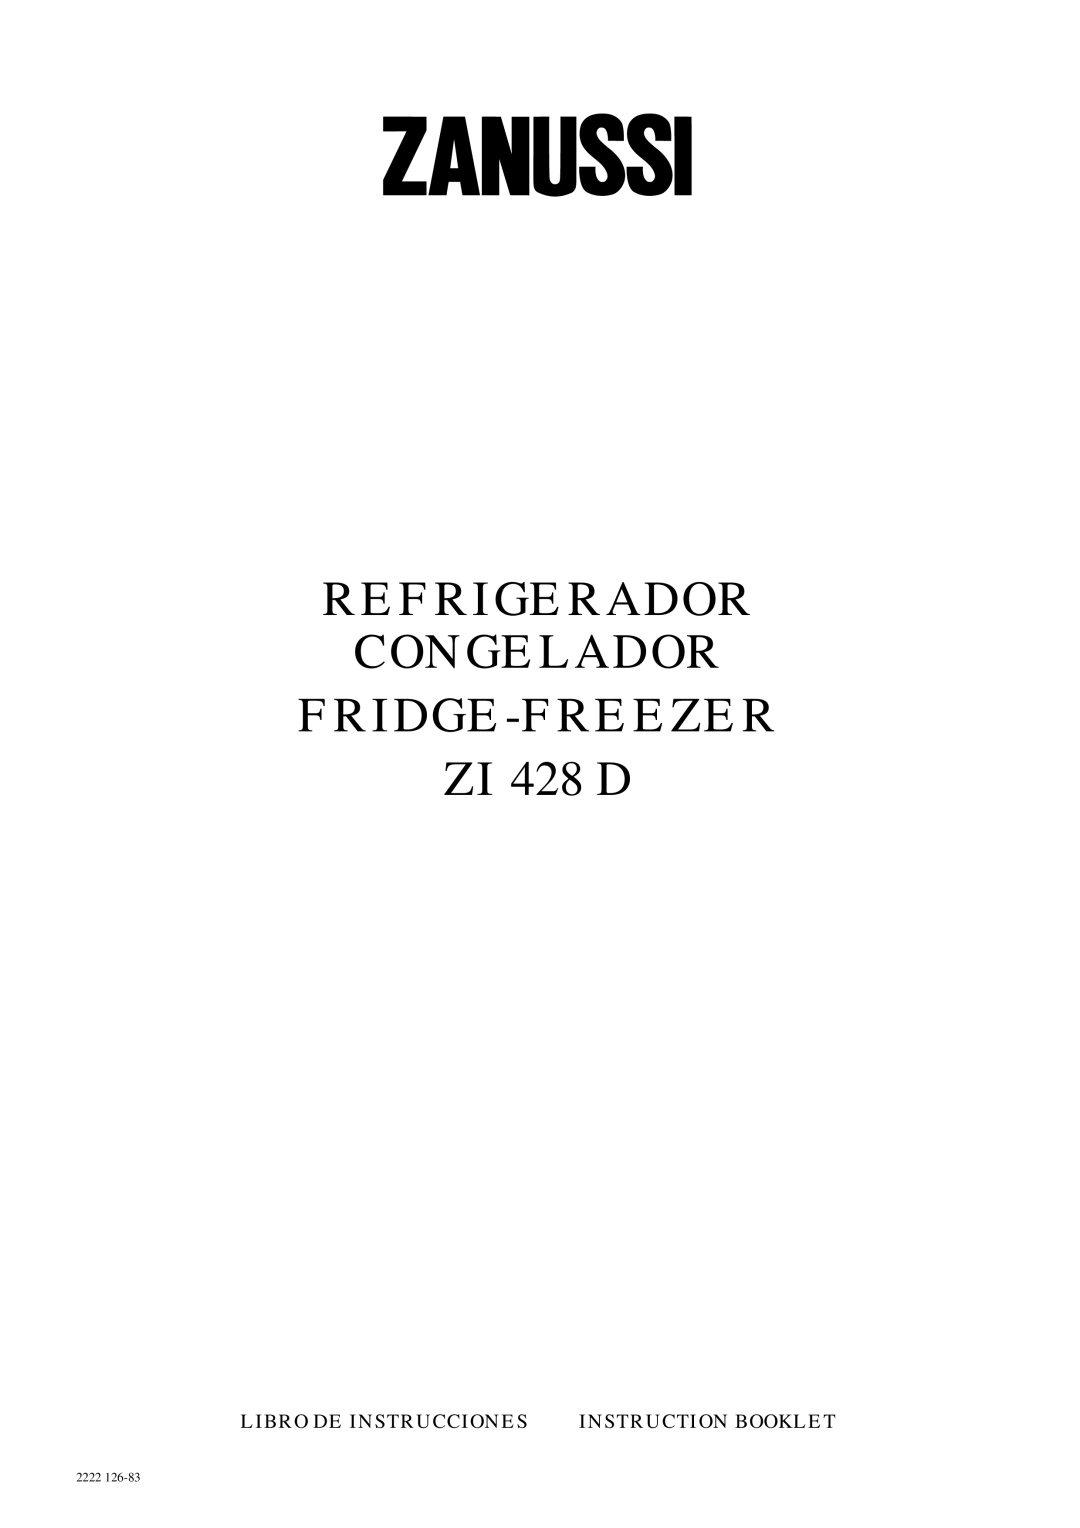 Zanussi manual REFRIGERADOR CONGELADOR FRIDGE-FREEZER ZI 428 D, Libro De Instrucciones, Instruction Booklet, 2222 